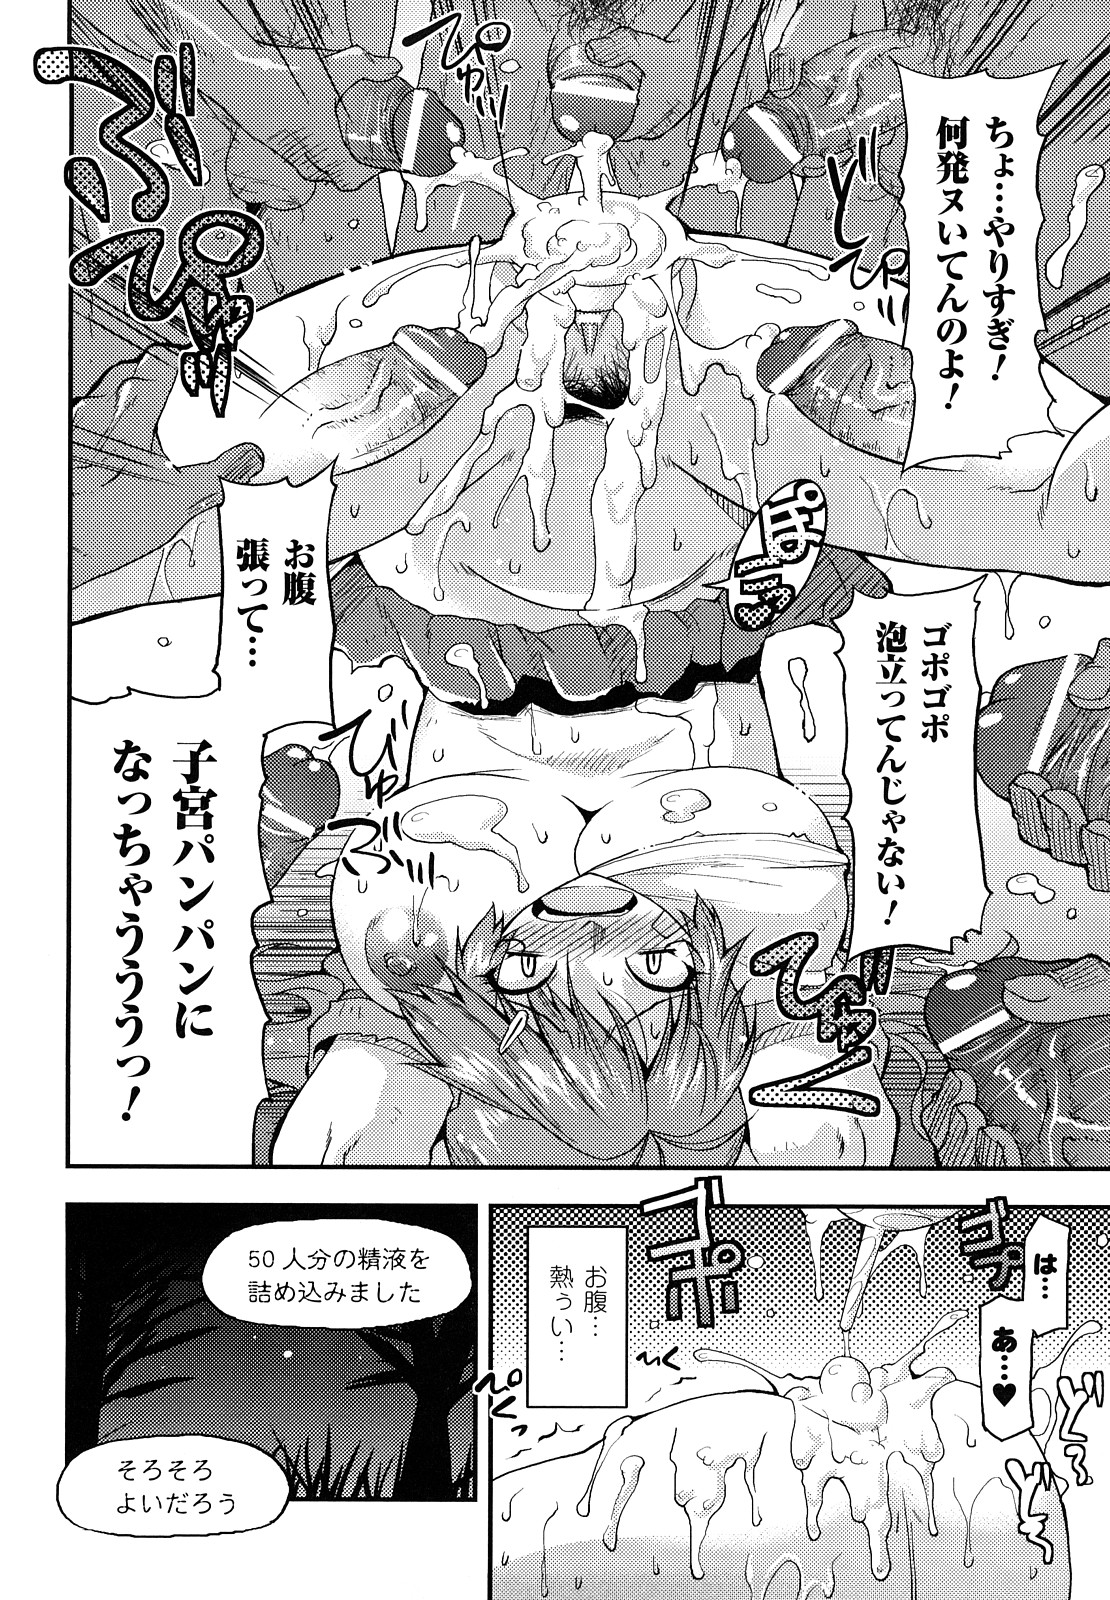 [Utamaro] Funi Puny Days page 30 full